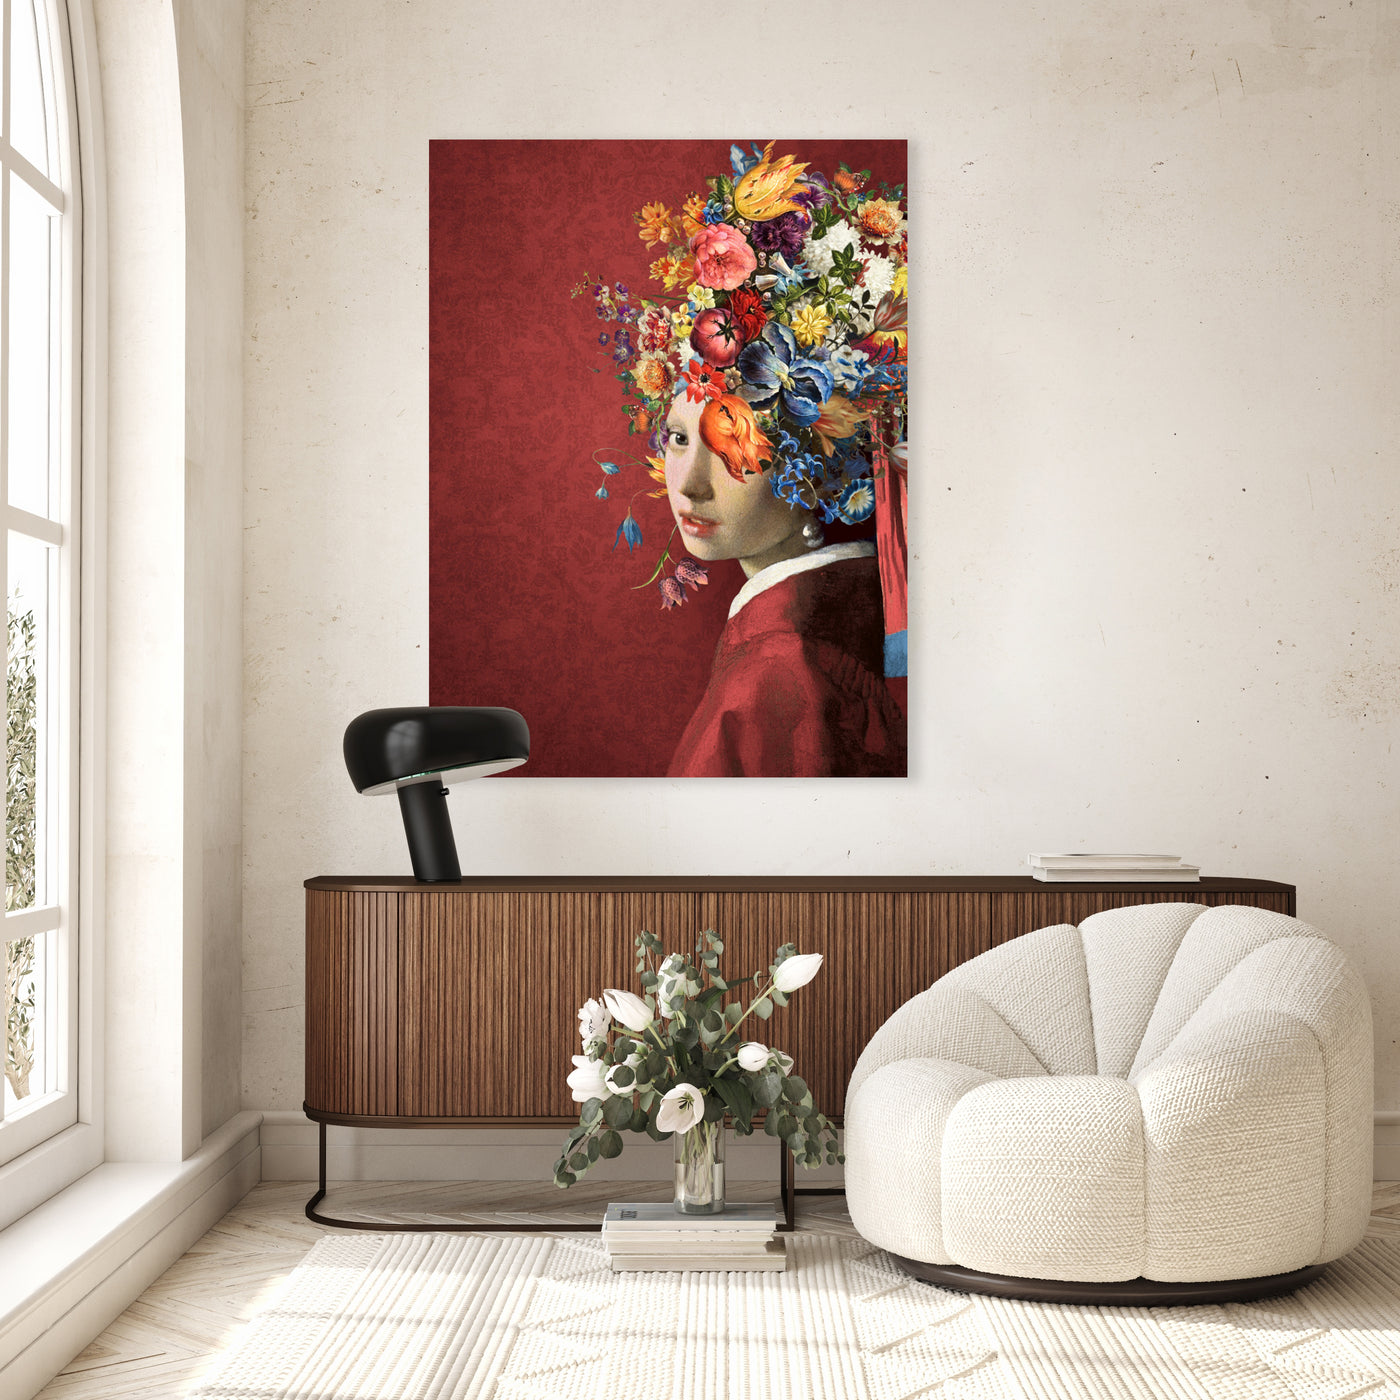 Mädchen mit Perlenohrring – Die Blumen auf Rot Edition – Marja van den Hurk